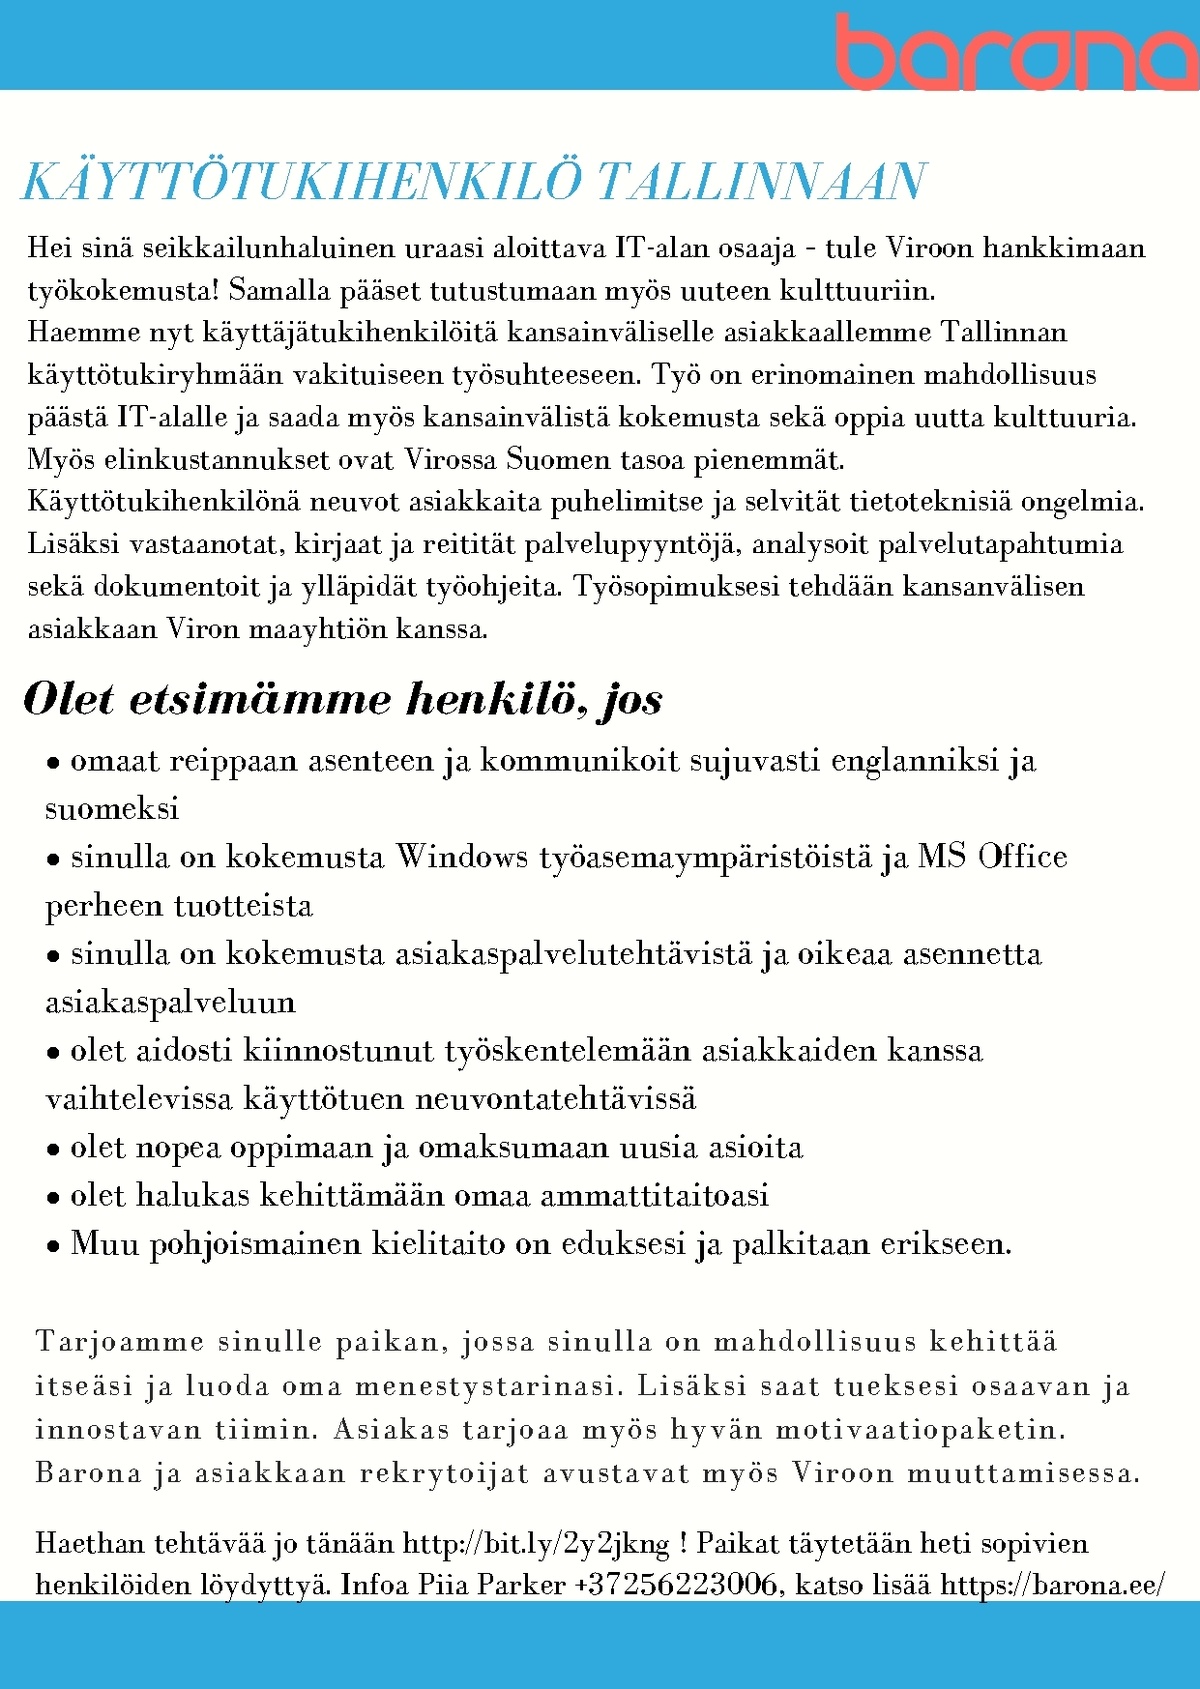 Barona Eesti OÜ Haemme nopeasti käyttötukihenkilöitä Tallinnaan  